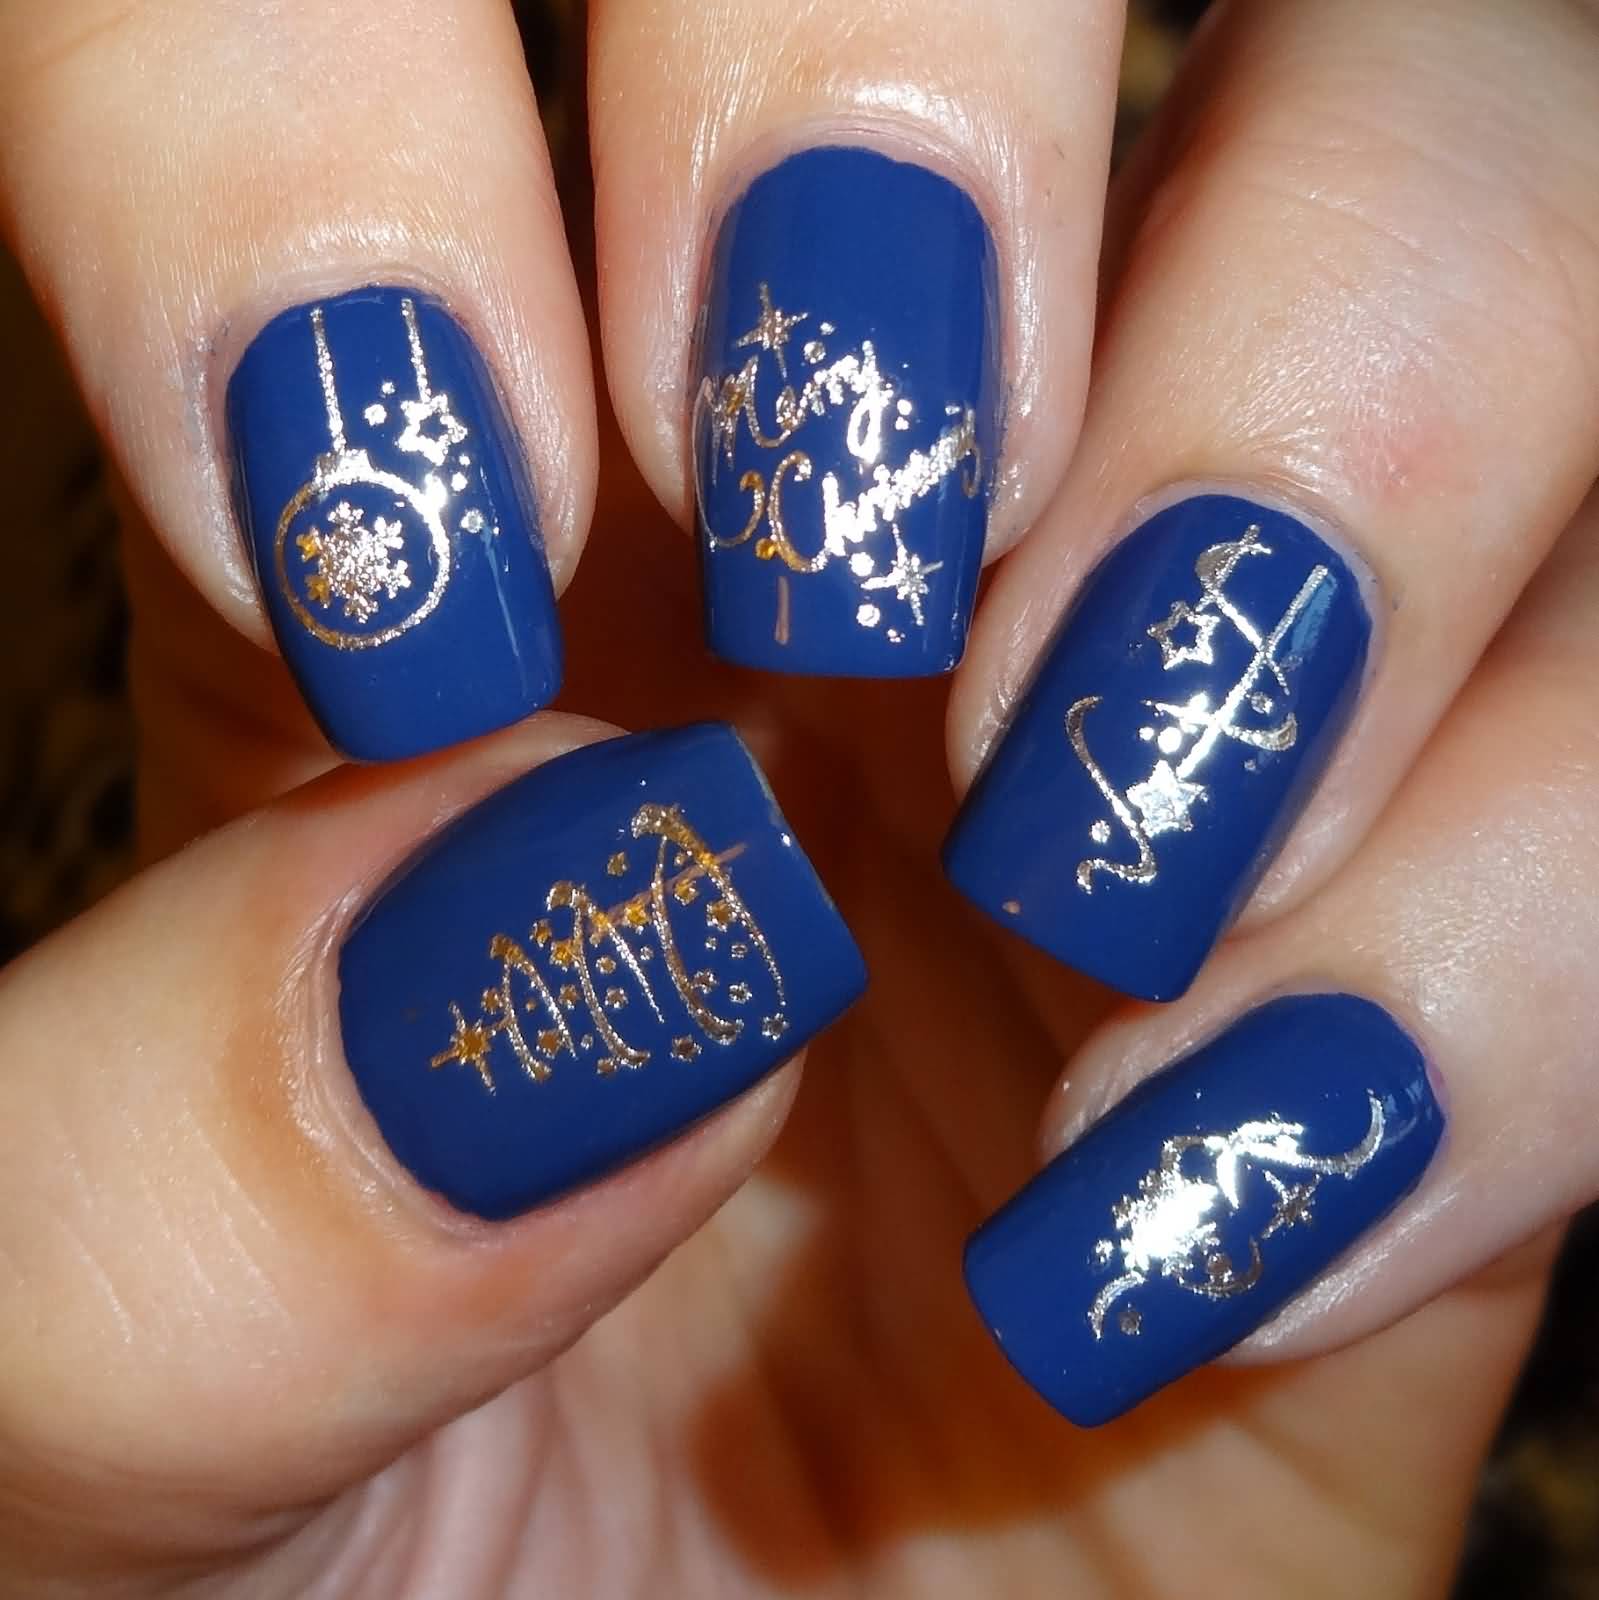 Royal Blue Nails And Silver Christmas Design Nail Art